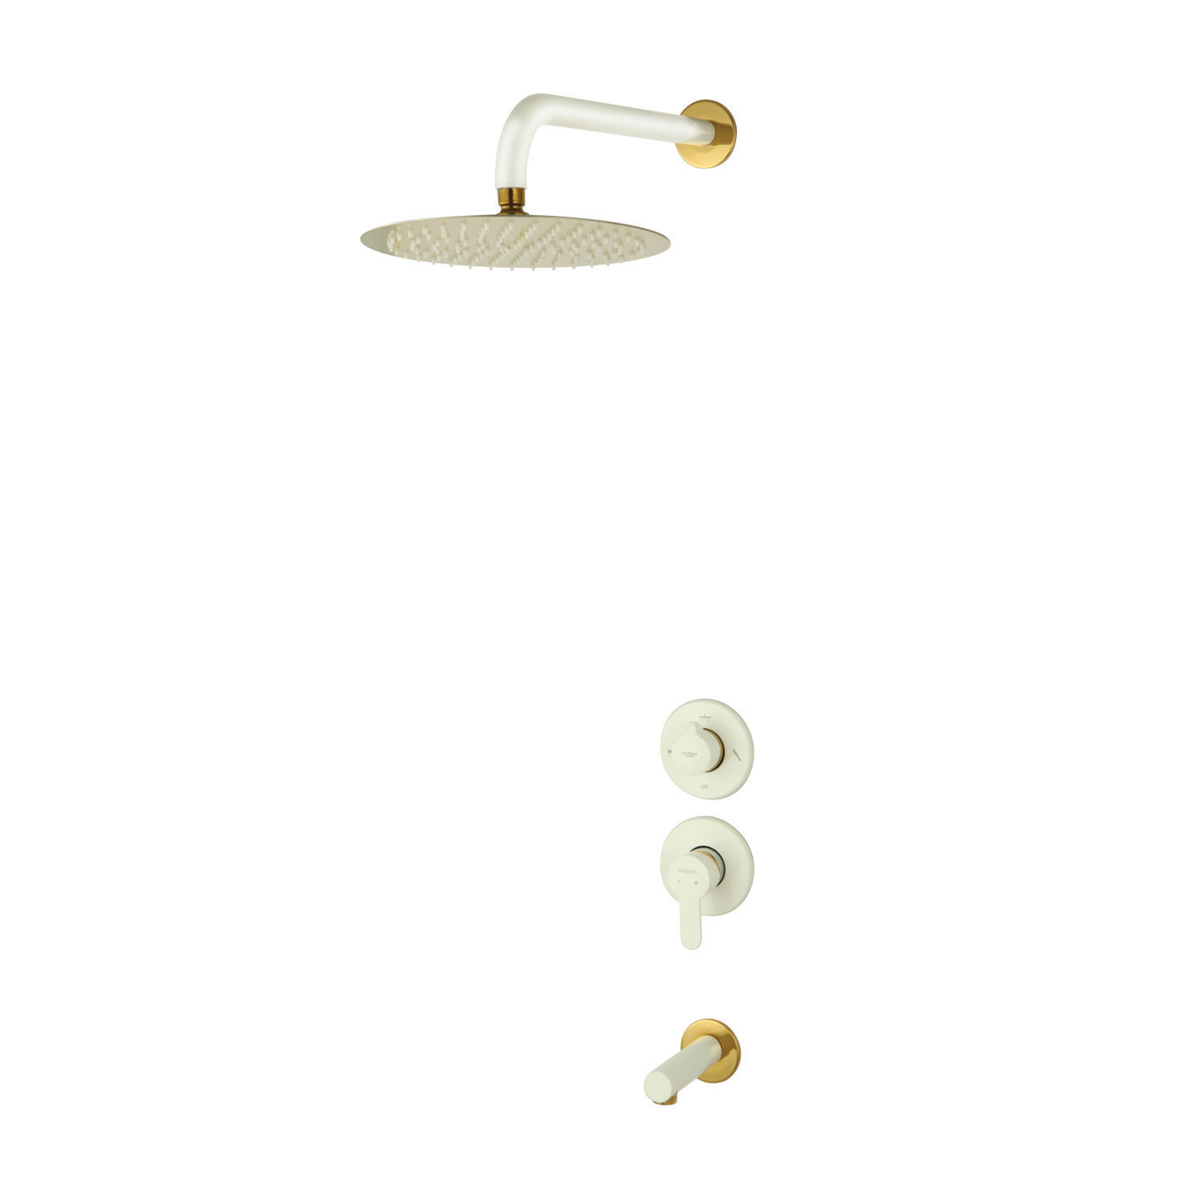 ملحقات شیر حمام توکار ویوات راسان مدل تنسو کلاس (2) سفید طلایی